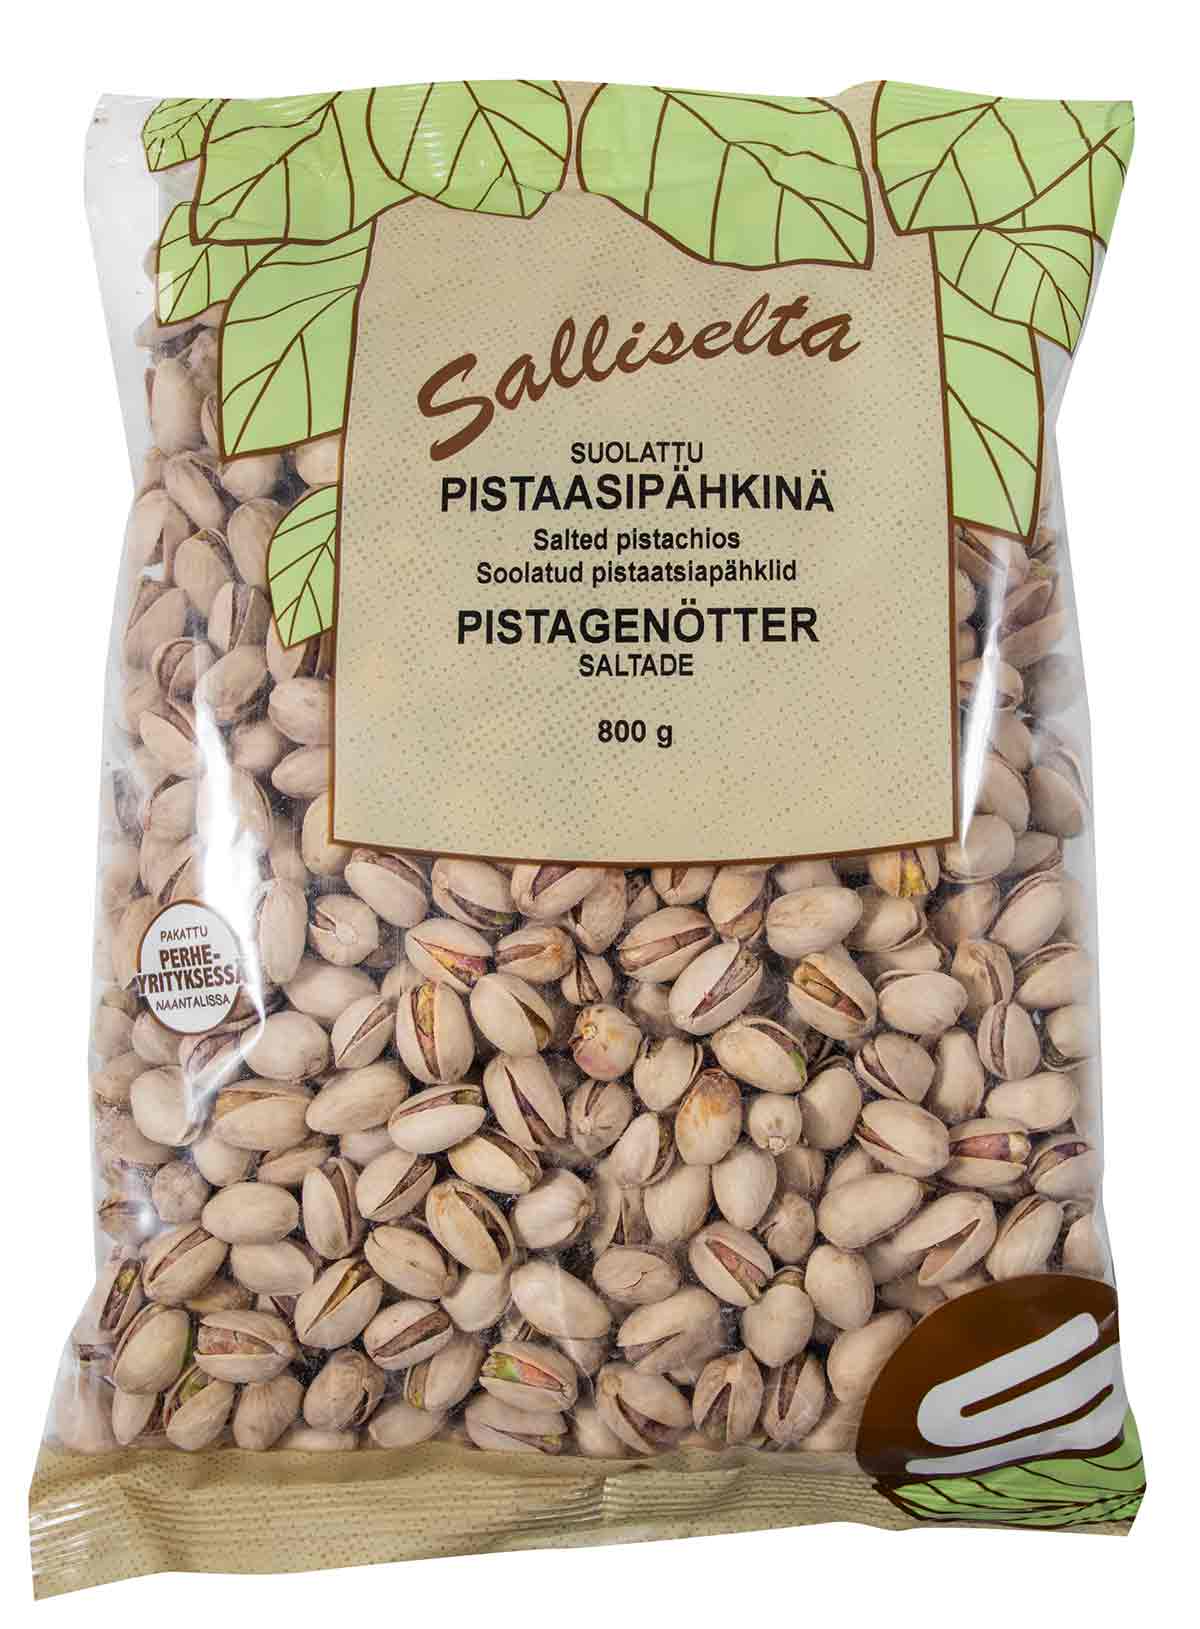 Pistagenötter saltade 800g